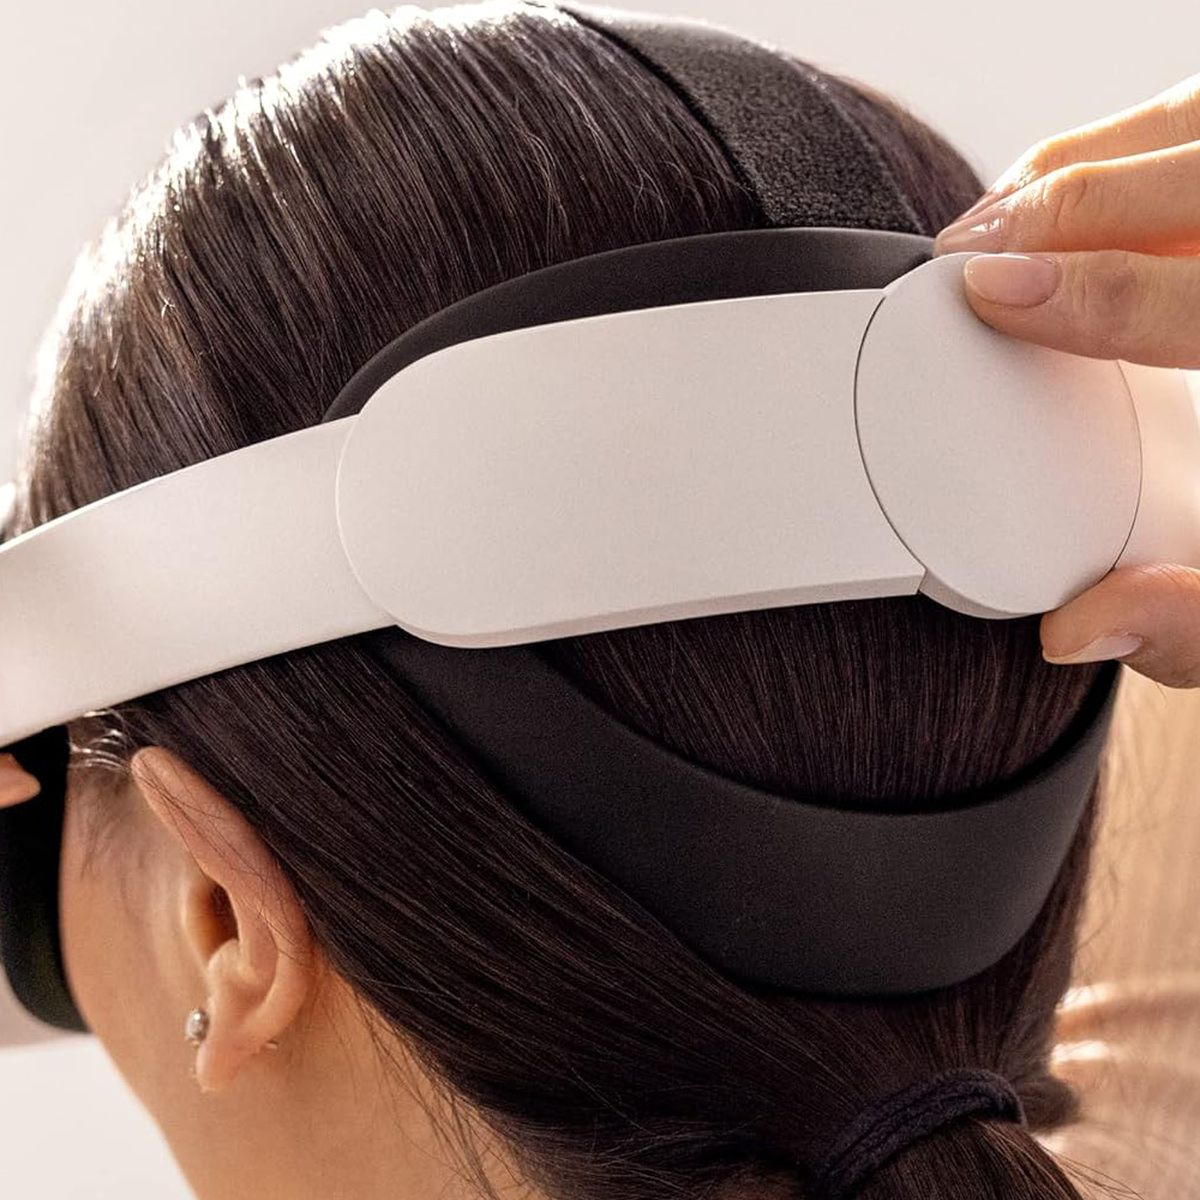 Una foto que muestra un modelo ajustando la Elite Strap en el casco de realidad virtual Meta Quest 2. Los auriculares están colocados en su cabeza y el usuario gira un dial para ajustarlos mejor.